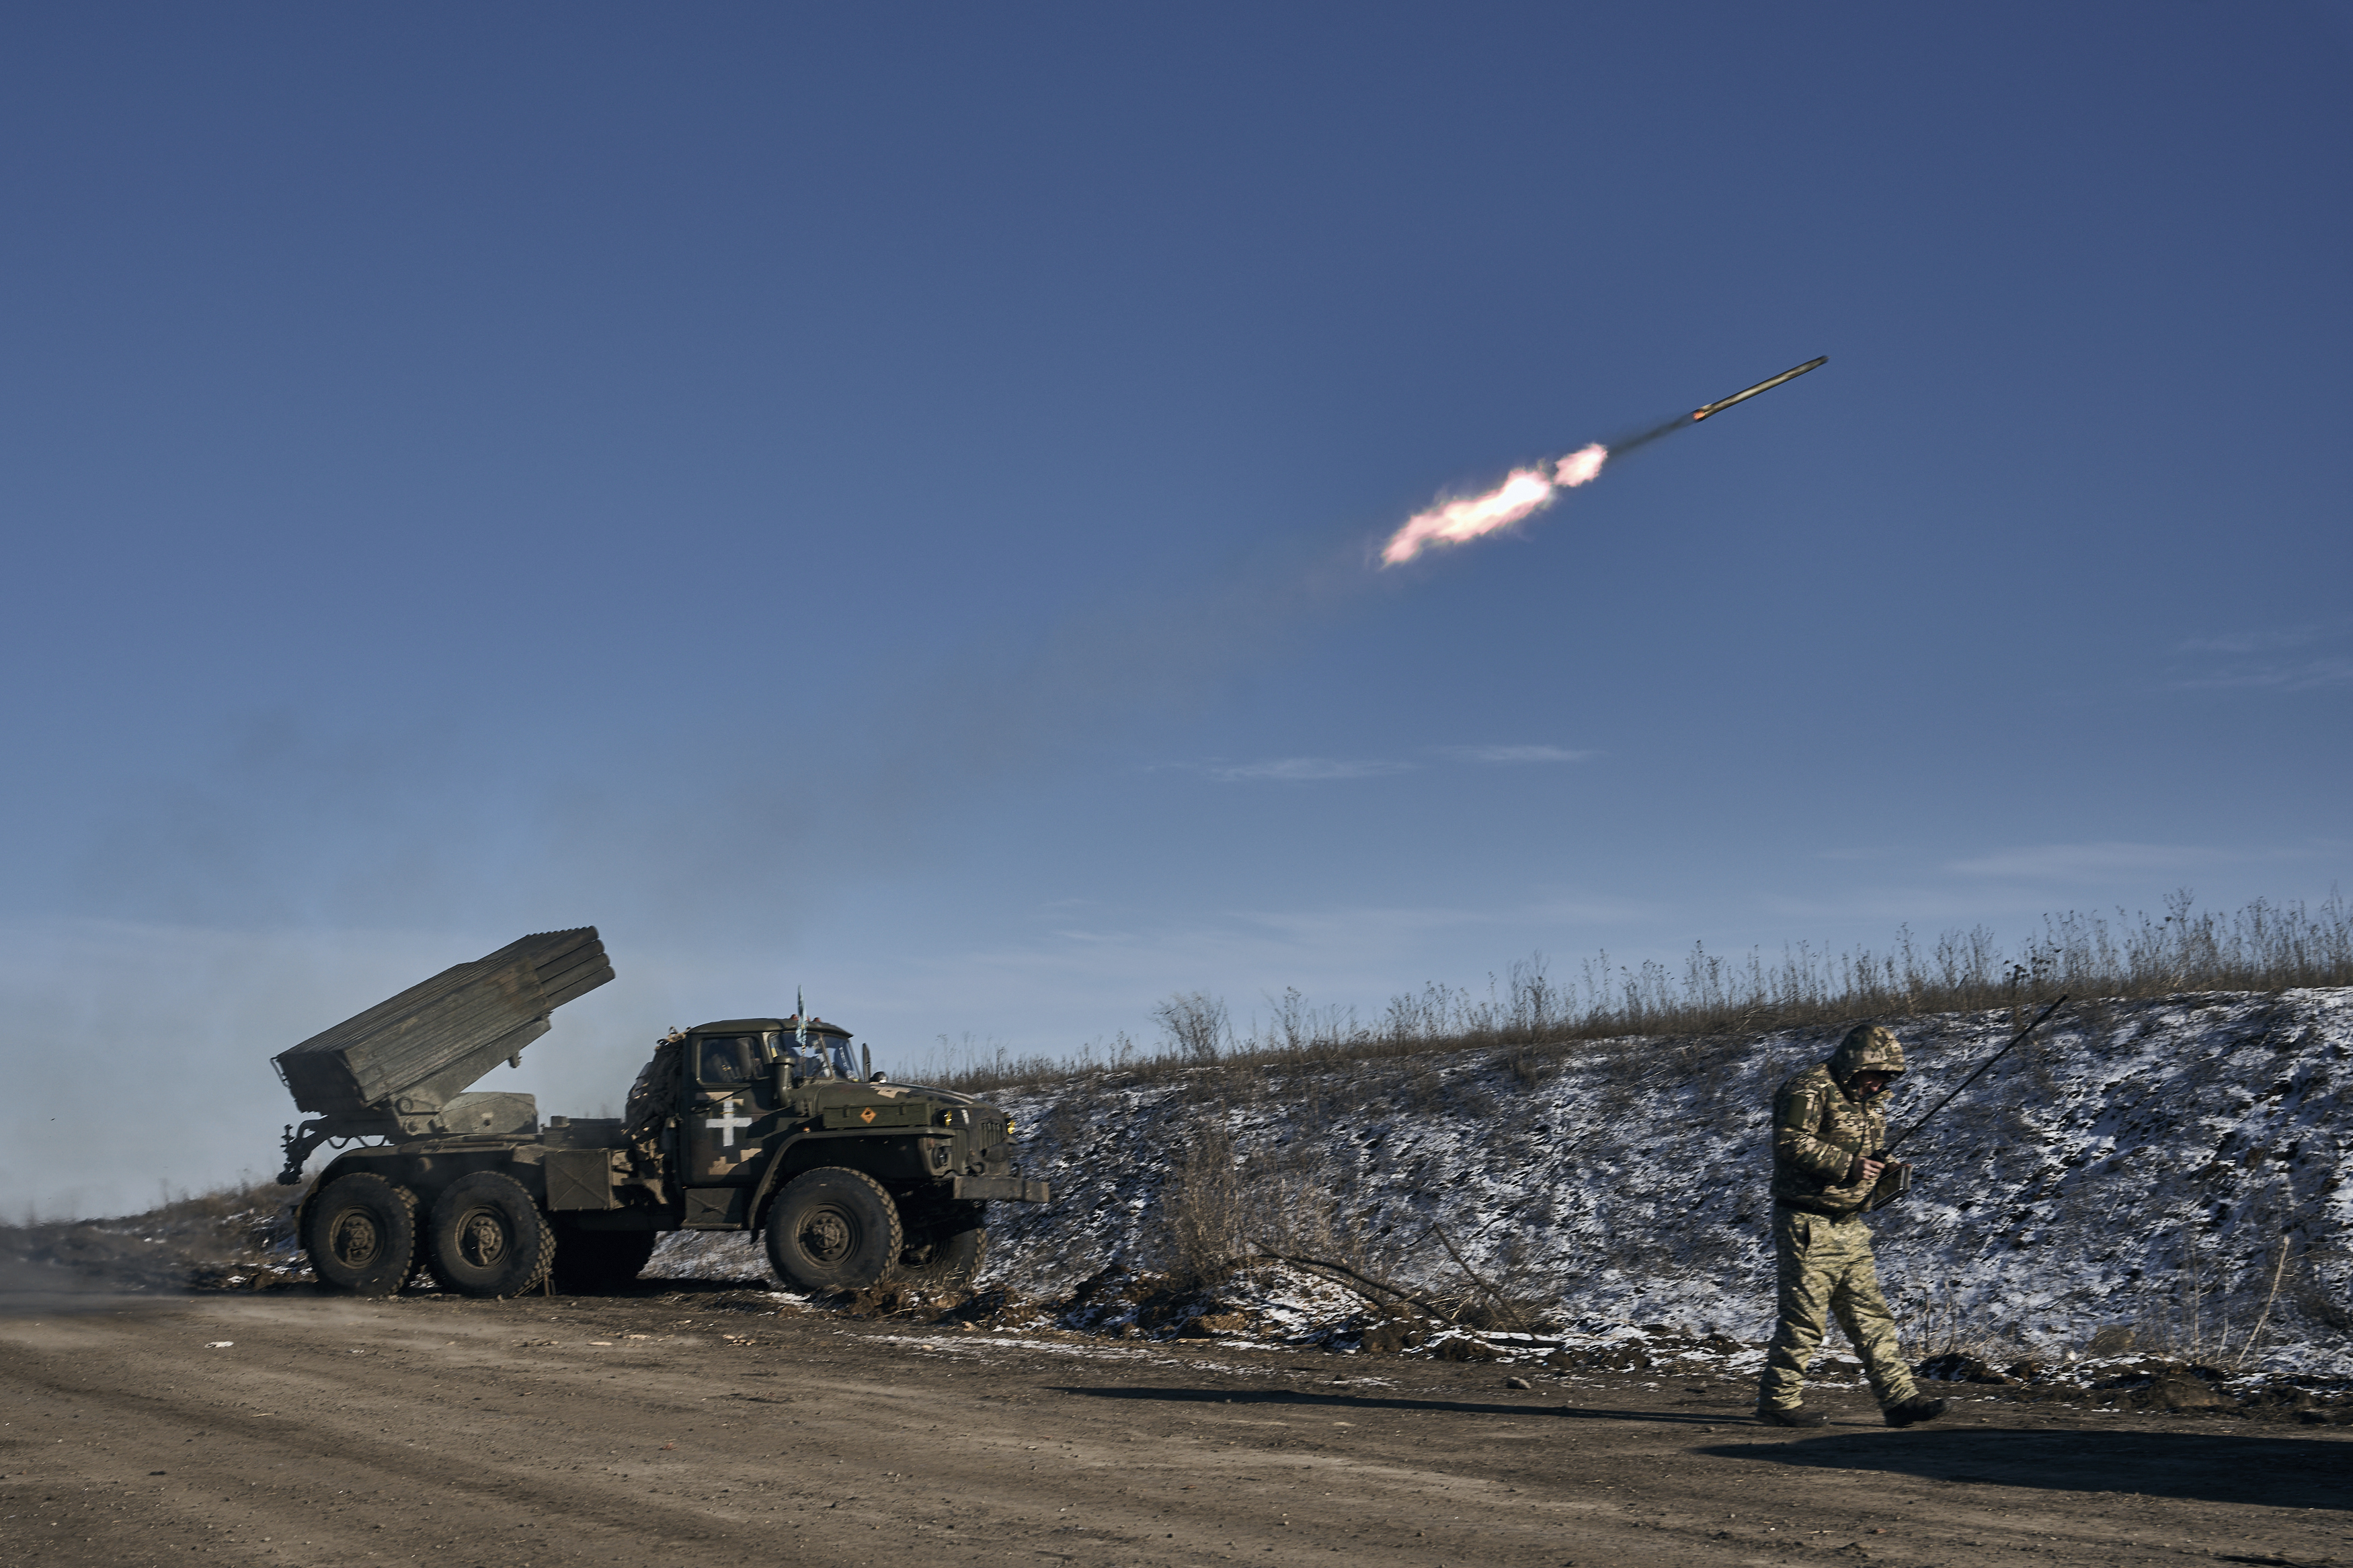 El lanzacohetes múltiple Grad del ejército ucraniano dispara cohetes contra posiciones rusas cerca de Soledar (Foto AP/Libkos)